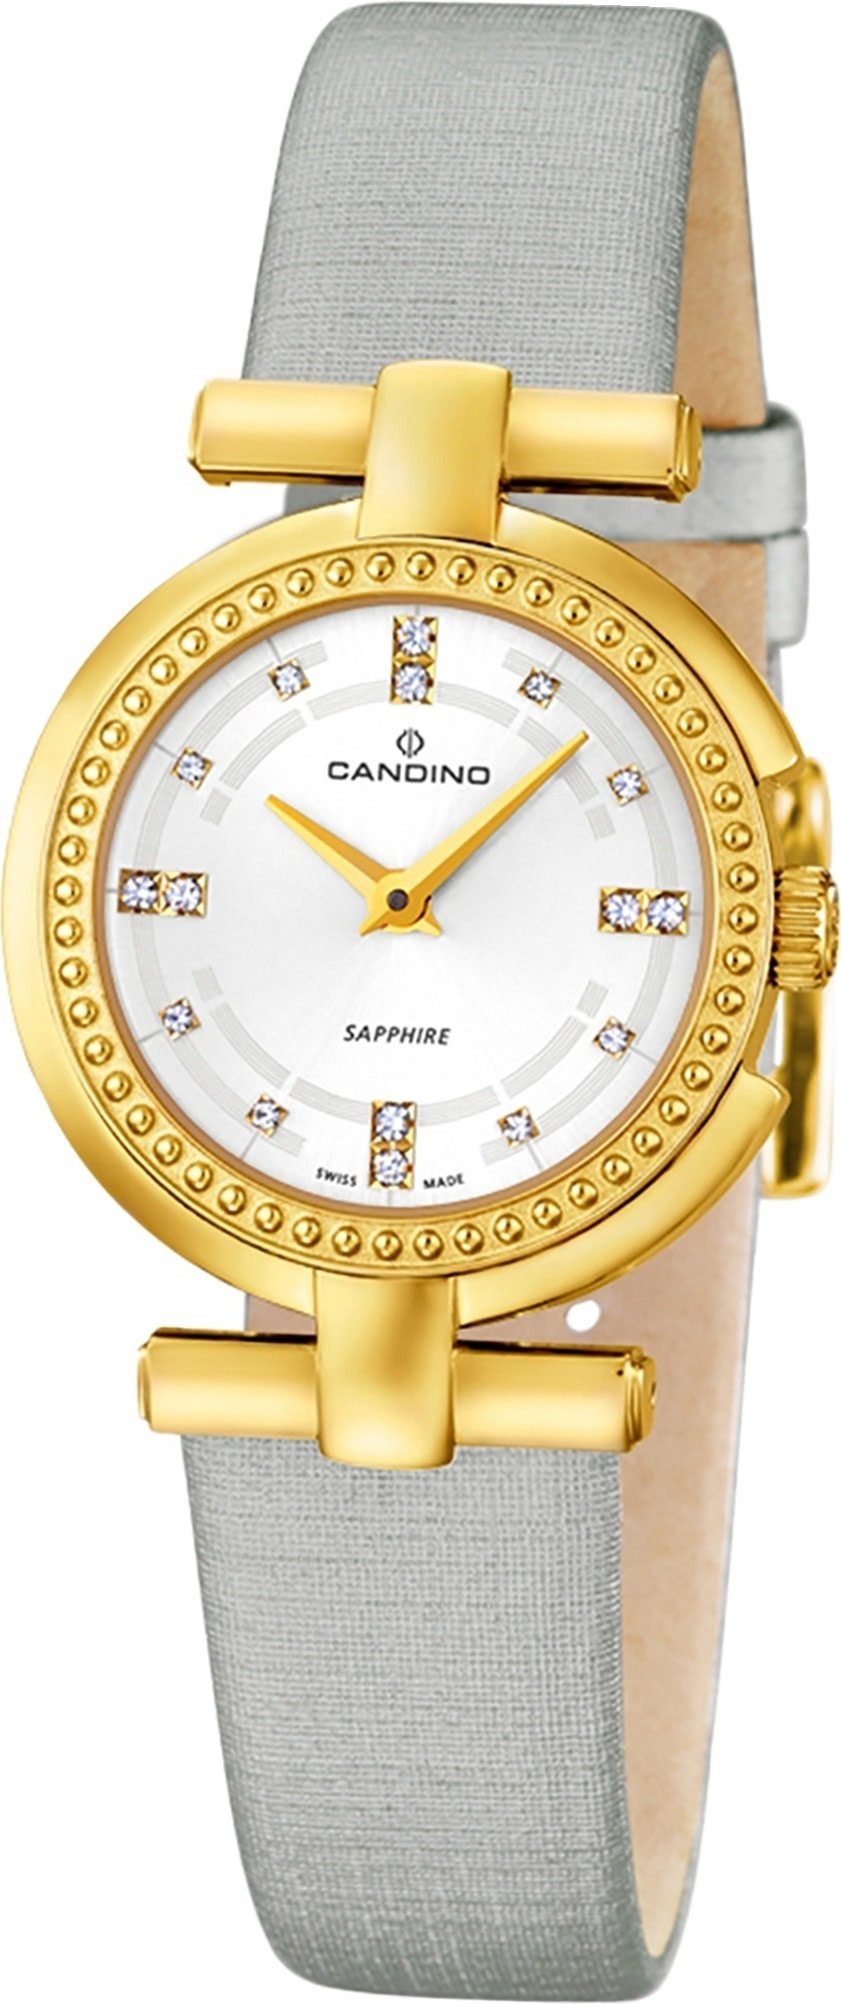 Damen Uhren Candino Quarzuhr D2UC4561/1 Candino Elegance Leder/Textil Damen Uhr, Damenuhr mit Leder/Textilarmband, rundes Gehäus